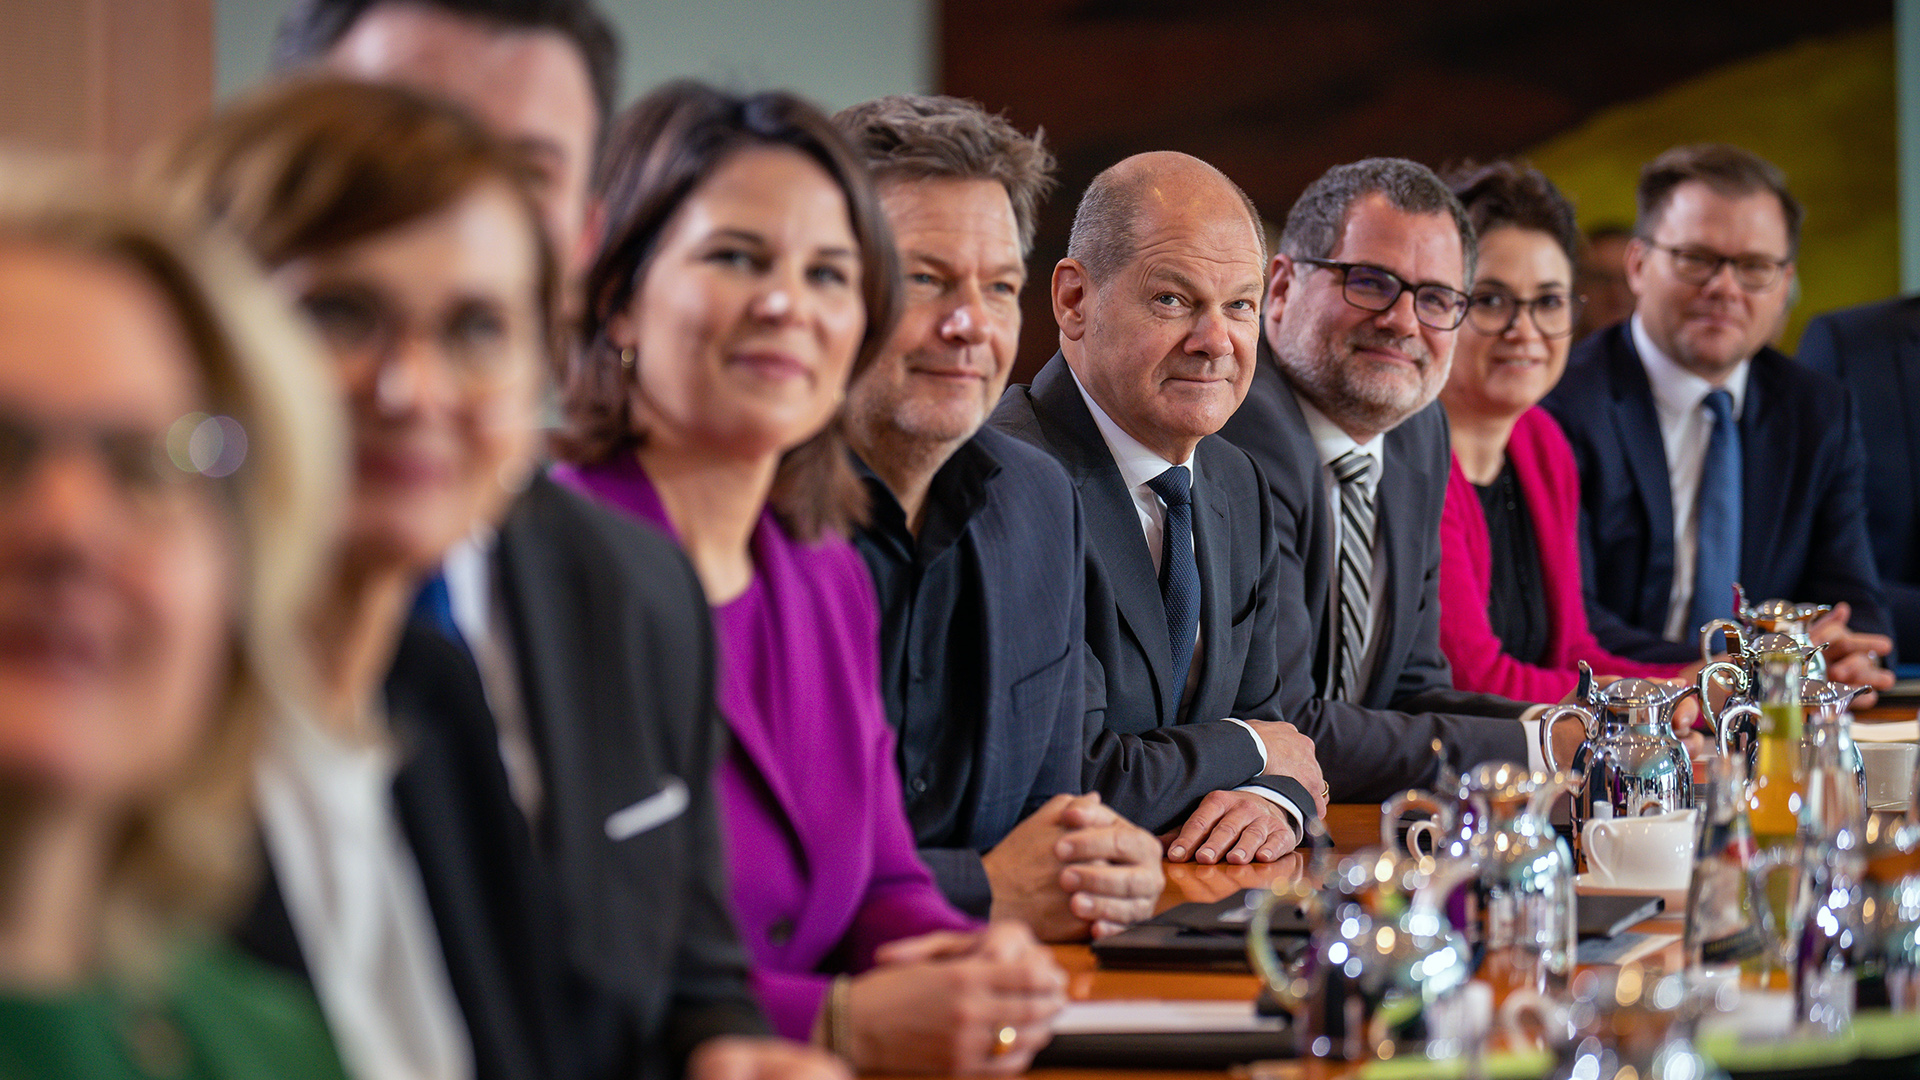 Bundeskanzler Olaf Scholz Bundeskanzler Olaf Scholz  (vierter v.r), sitzt beim traditionellen Gruppenbild vor der Sitzung des Bundeskabinetts im Kanzleramt zwischen seinen Kabinettsmitgliedern. | picture alliance/dpa